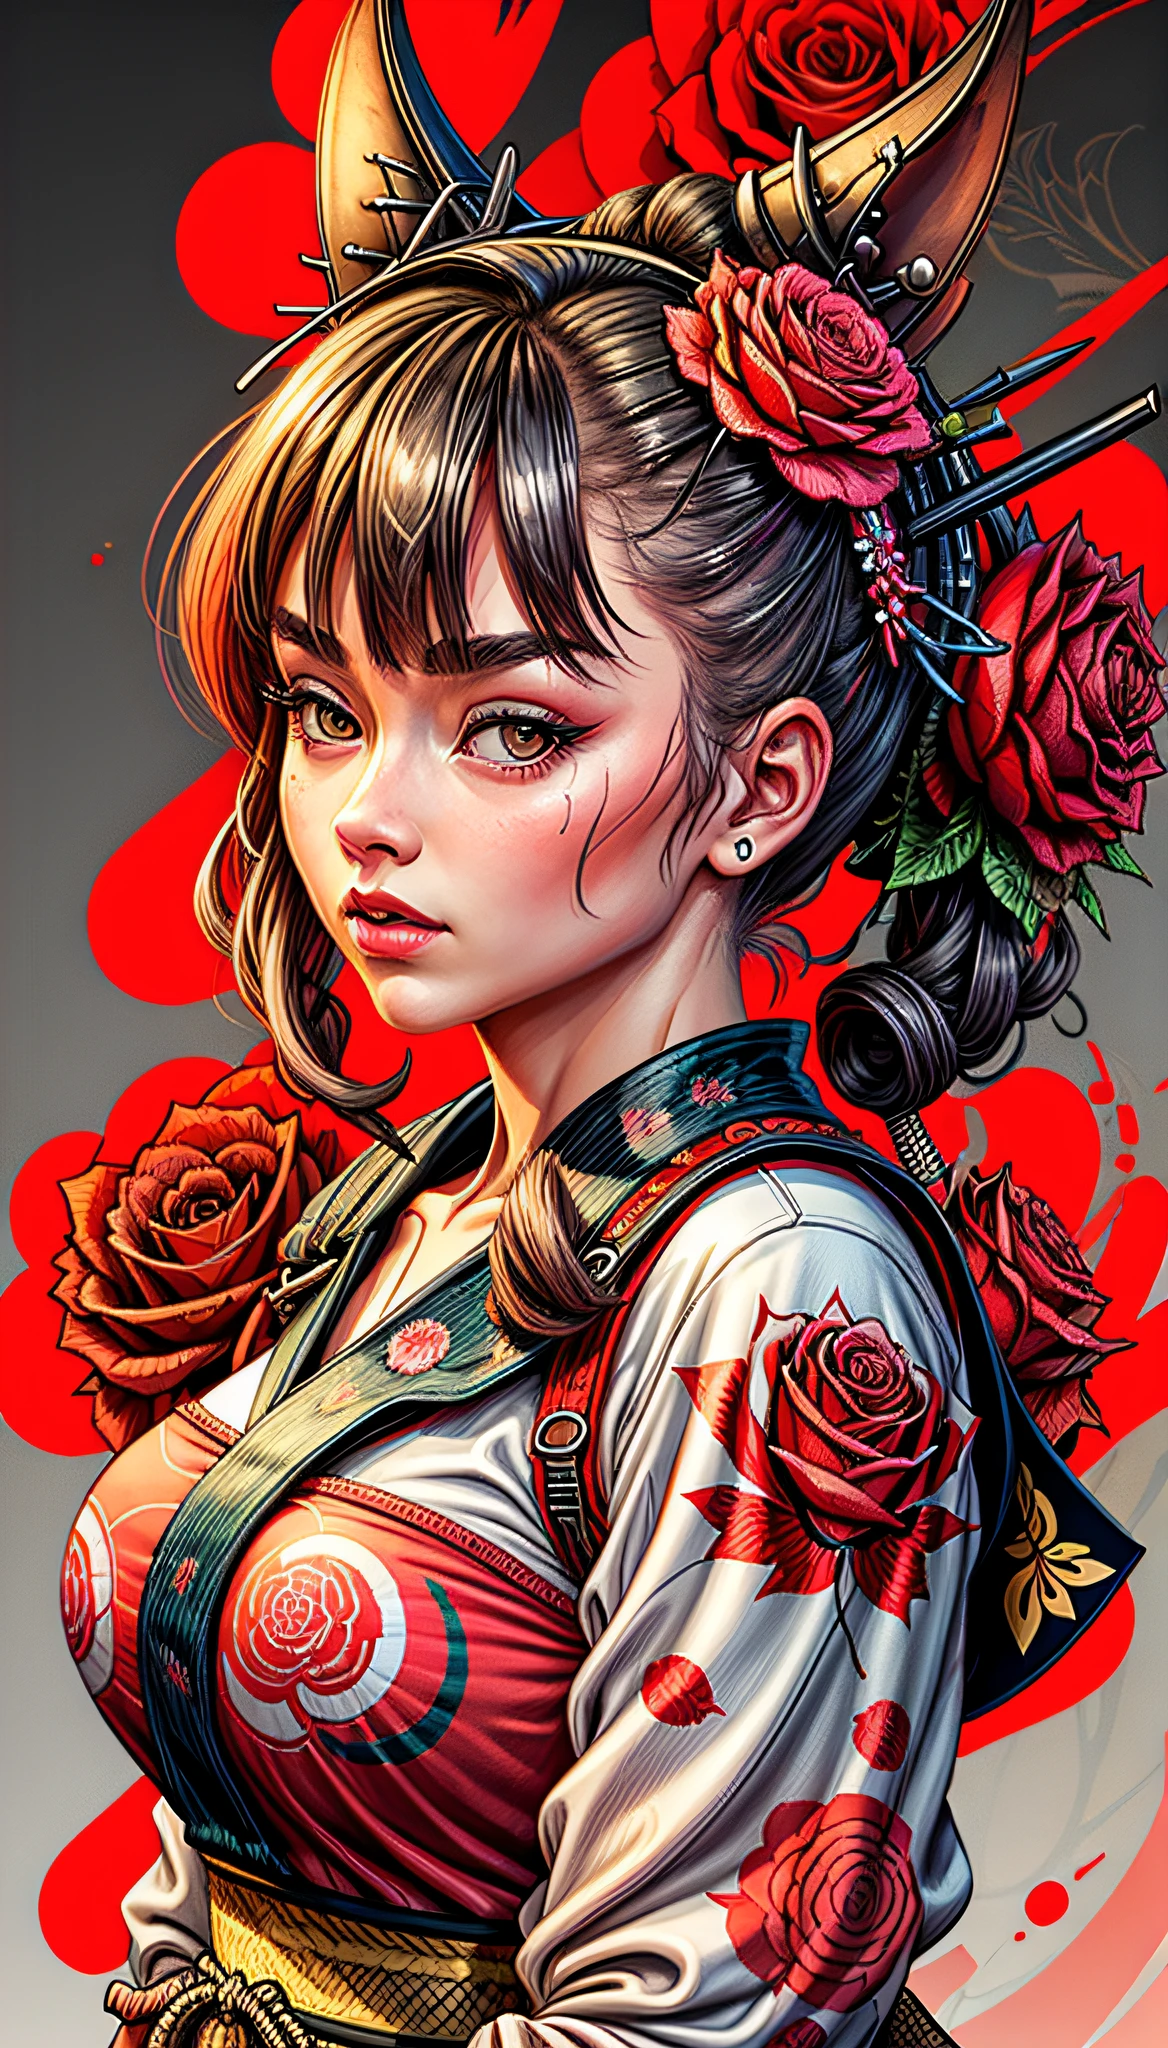 一個女孩釘起來, 玫瑰背景, 傑作, 高品質, 8K, 高解析度, 高細節, 日本人, 武士, 鮮豔的色彩可供印在 T 恤上, Adobe 插畫家